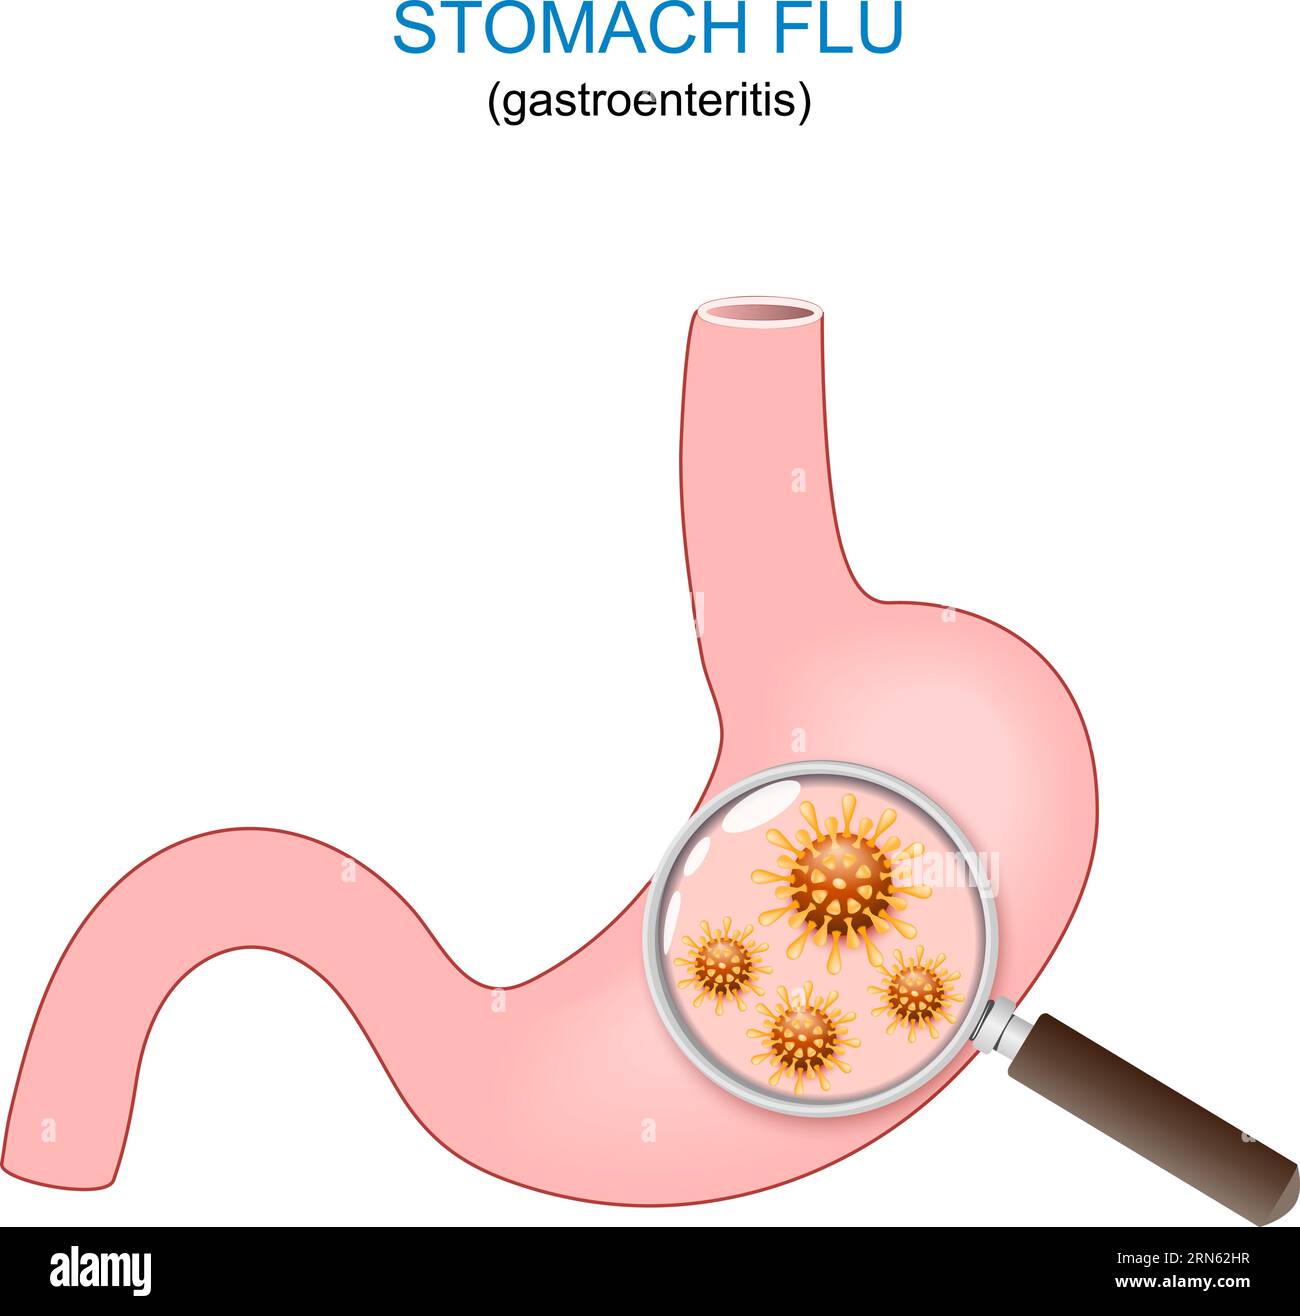 Magengrippe. Menschlicher Magen isoliert auf weißem Hintergrund. Close-up von Gastroenteritis-verursachenden Viren. Vektorillustration Stock Vektor